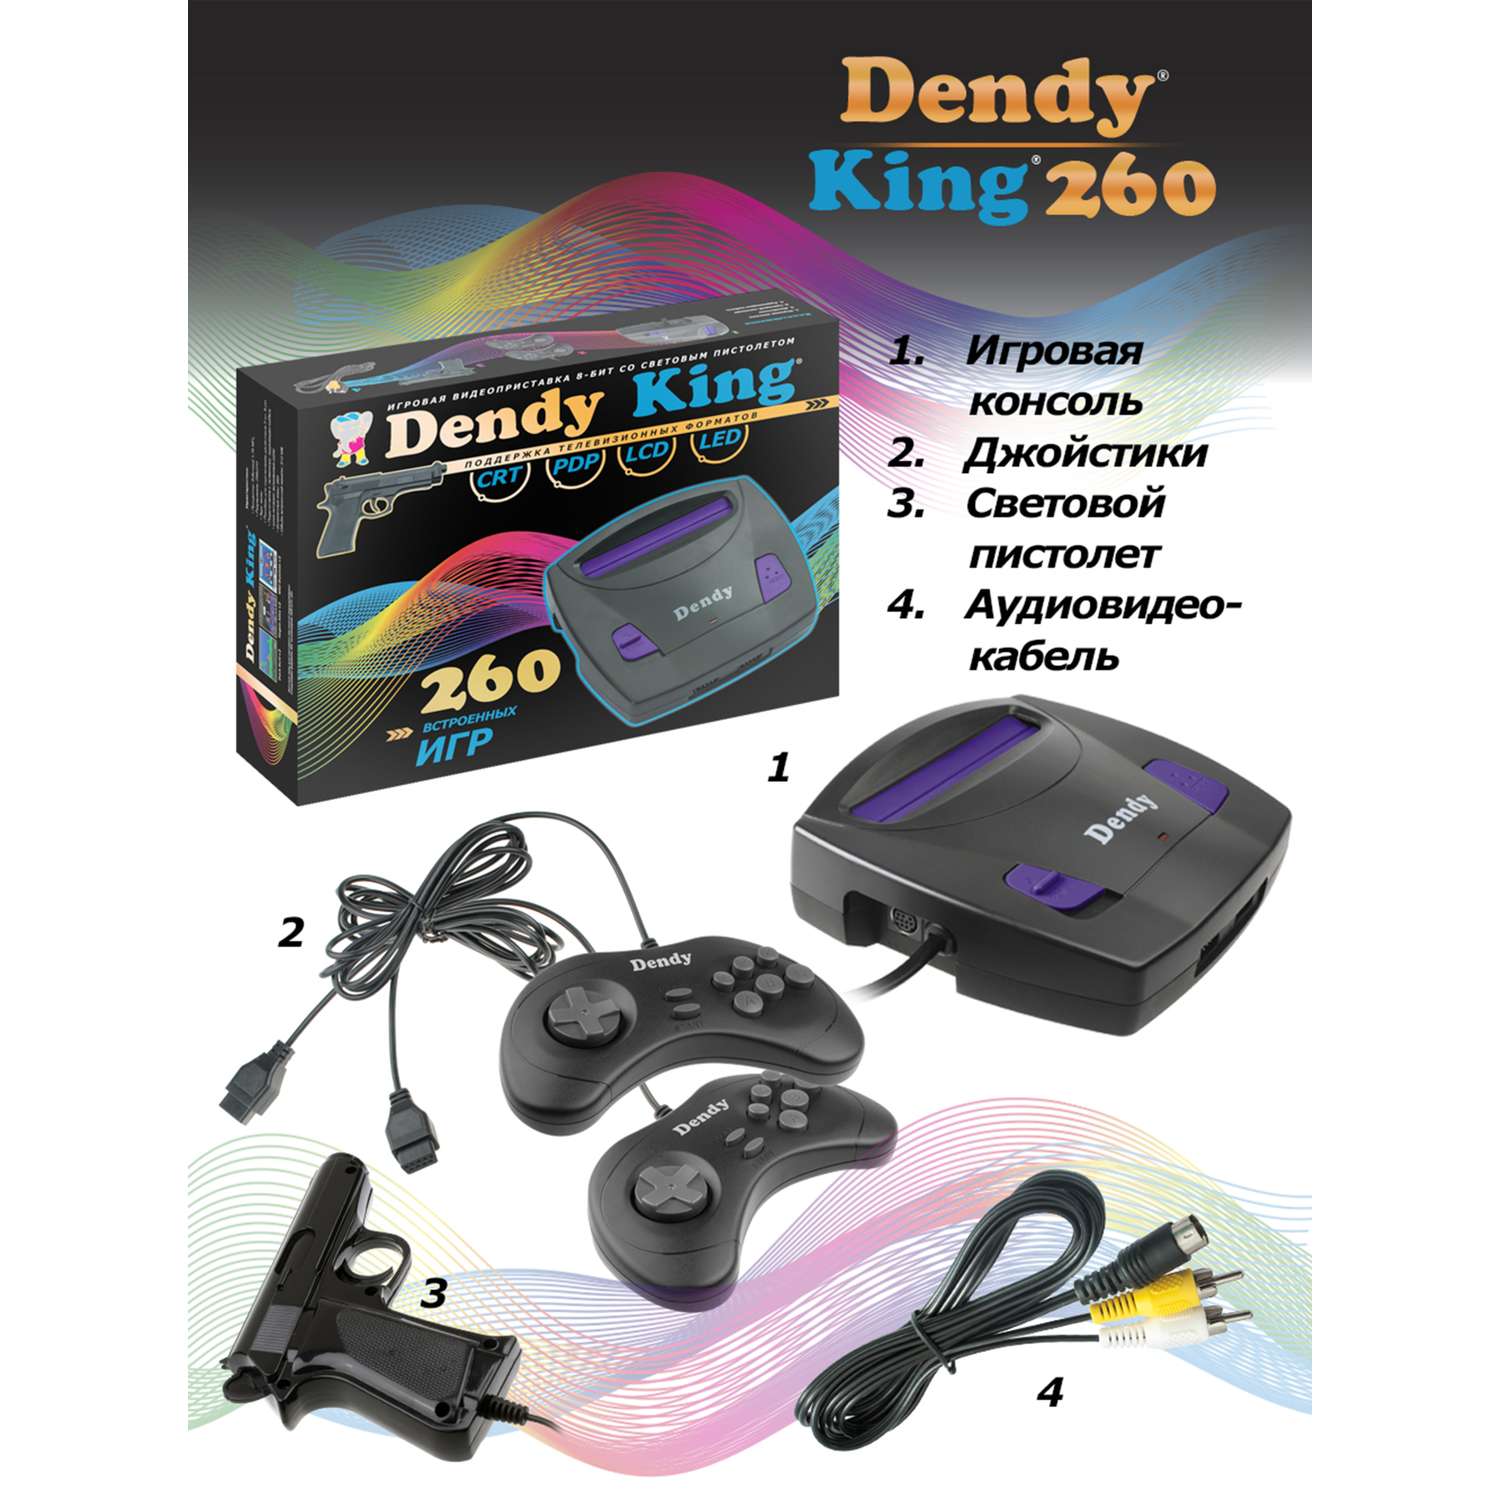 Игровая приставка Dendy King 260 игр (8-бит) со световым пистолетом - фото 3